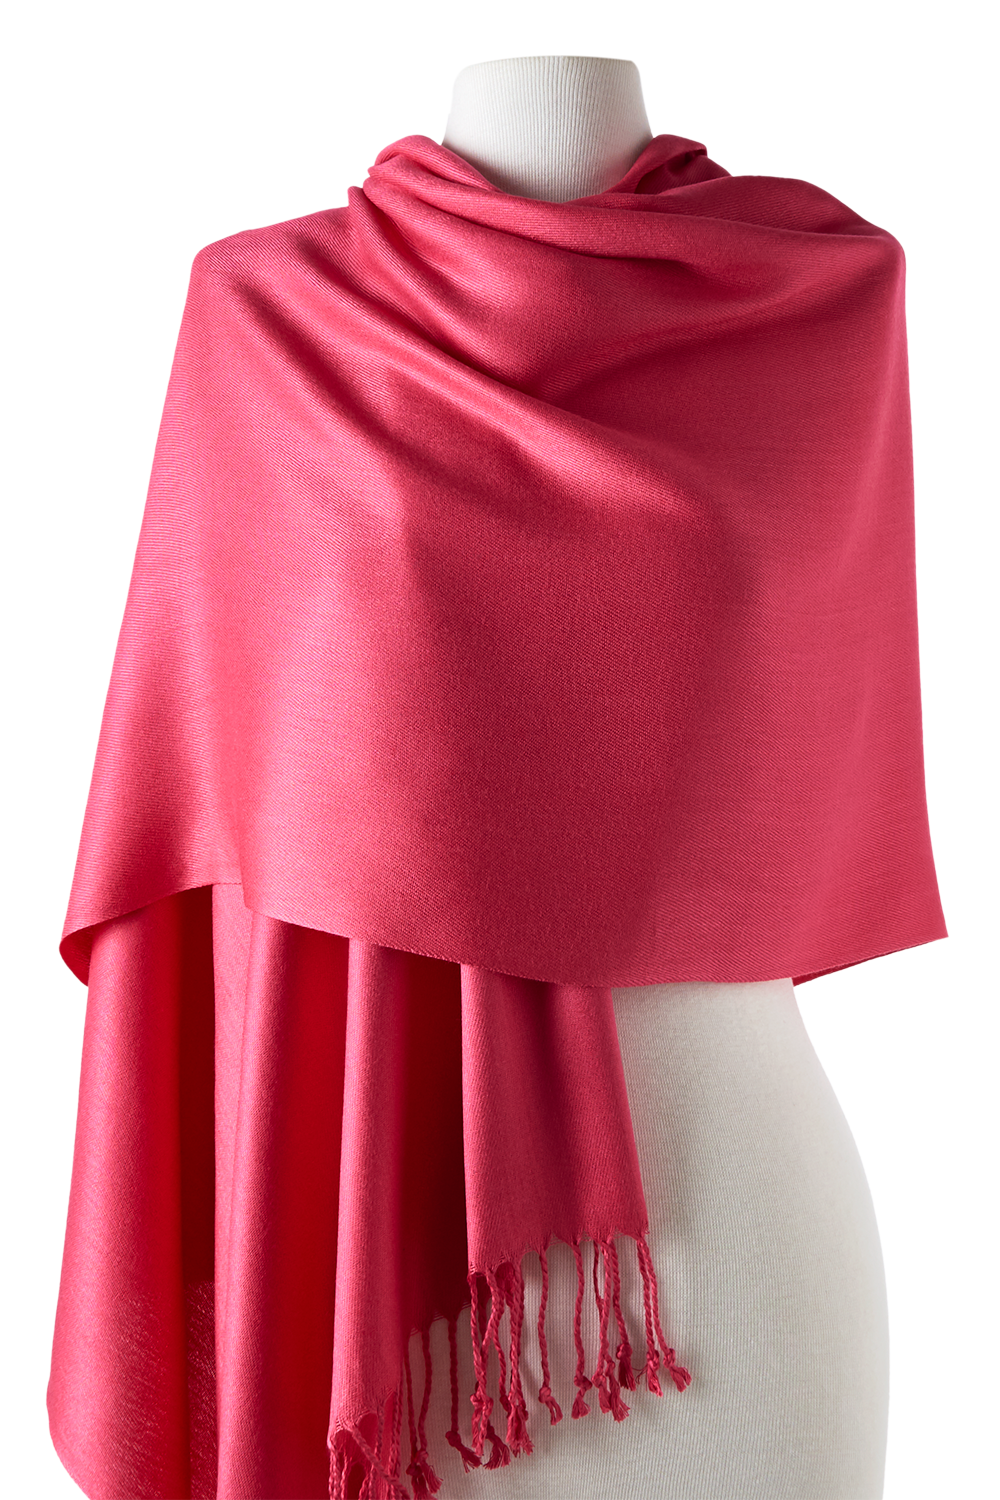 pashmina e cachecol de viscose rosa antigo 70x180cm para frio, inverno, casamentos, festas e eventos